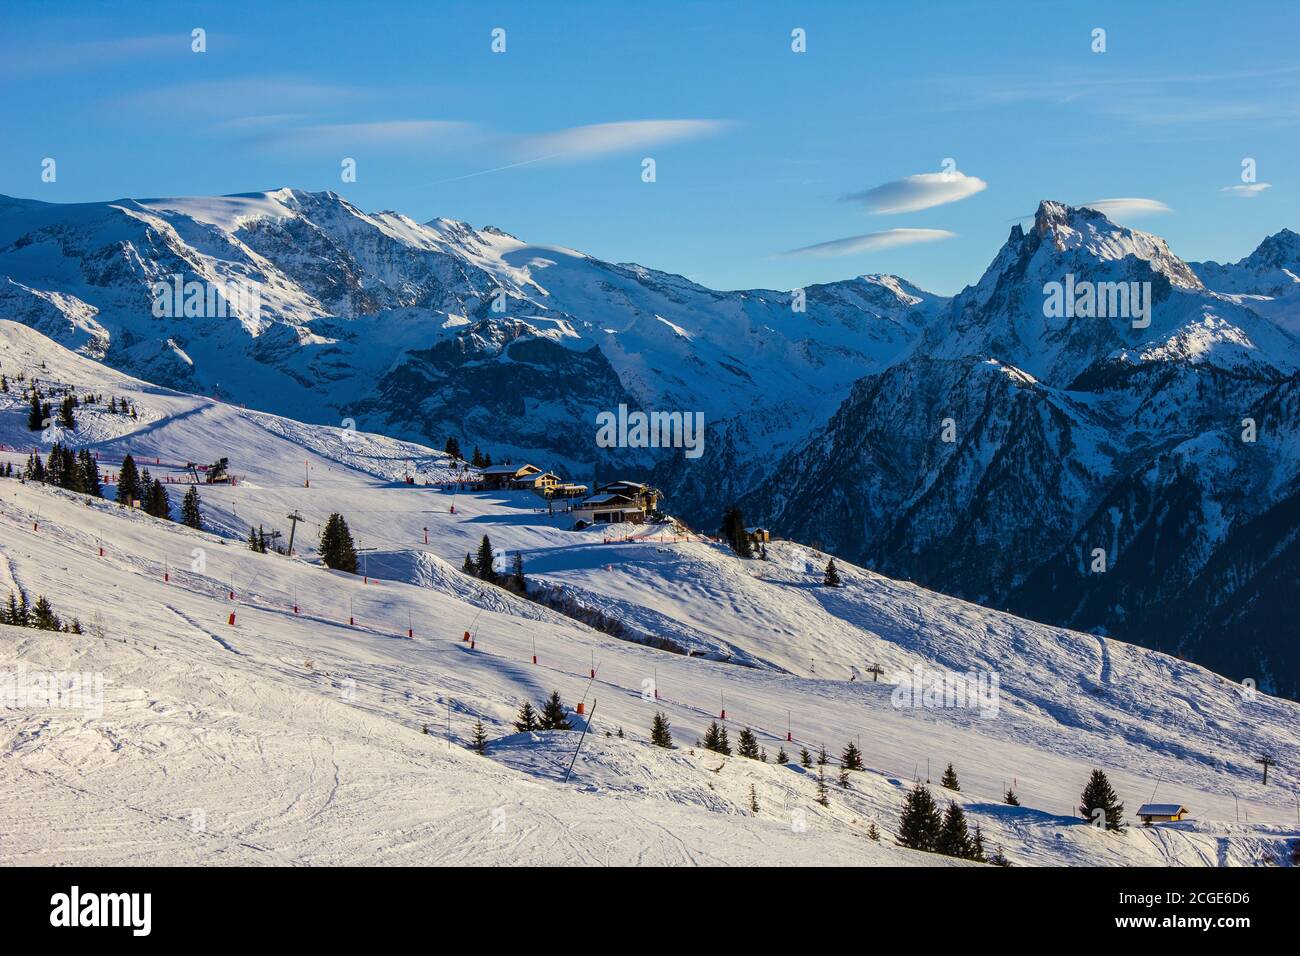 Vue sur une piste de ski au-dessus de Champagny-en-Vanoise, Alpes françaises Banque D'Images